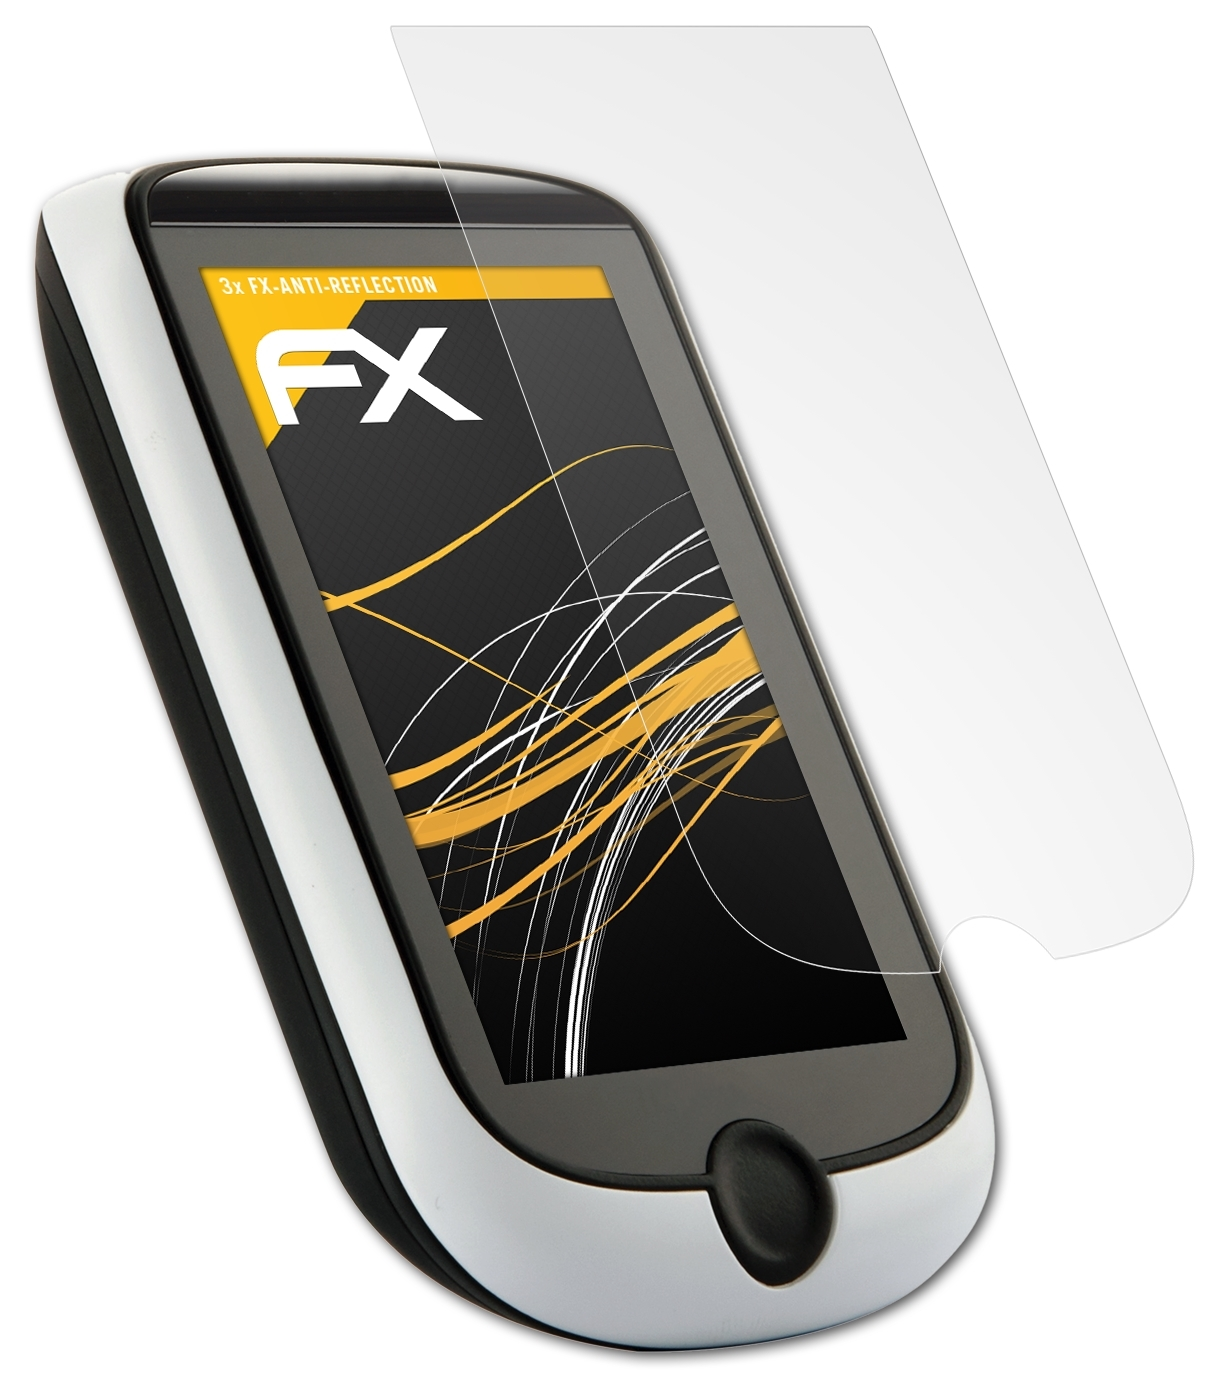 ATFOLIX 3x FX-Antireflex Displayschutz(für Mio Cyclo 315)